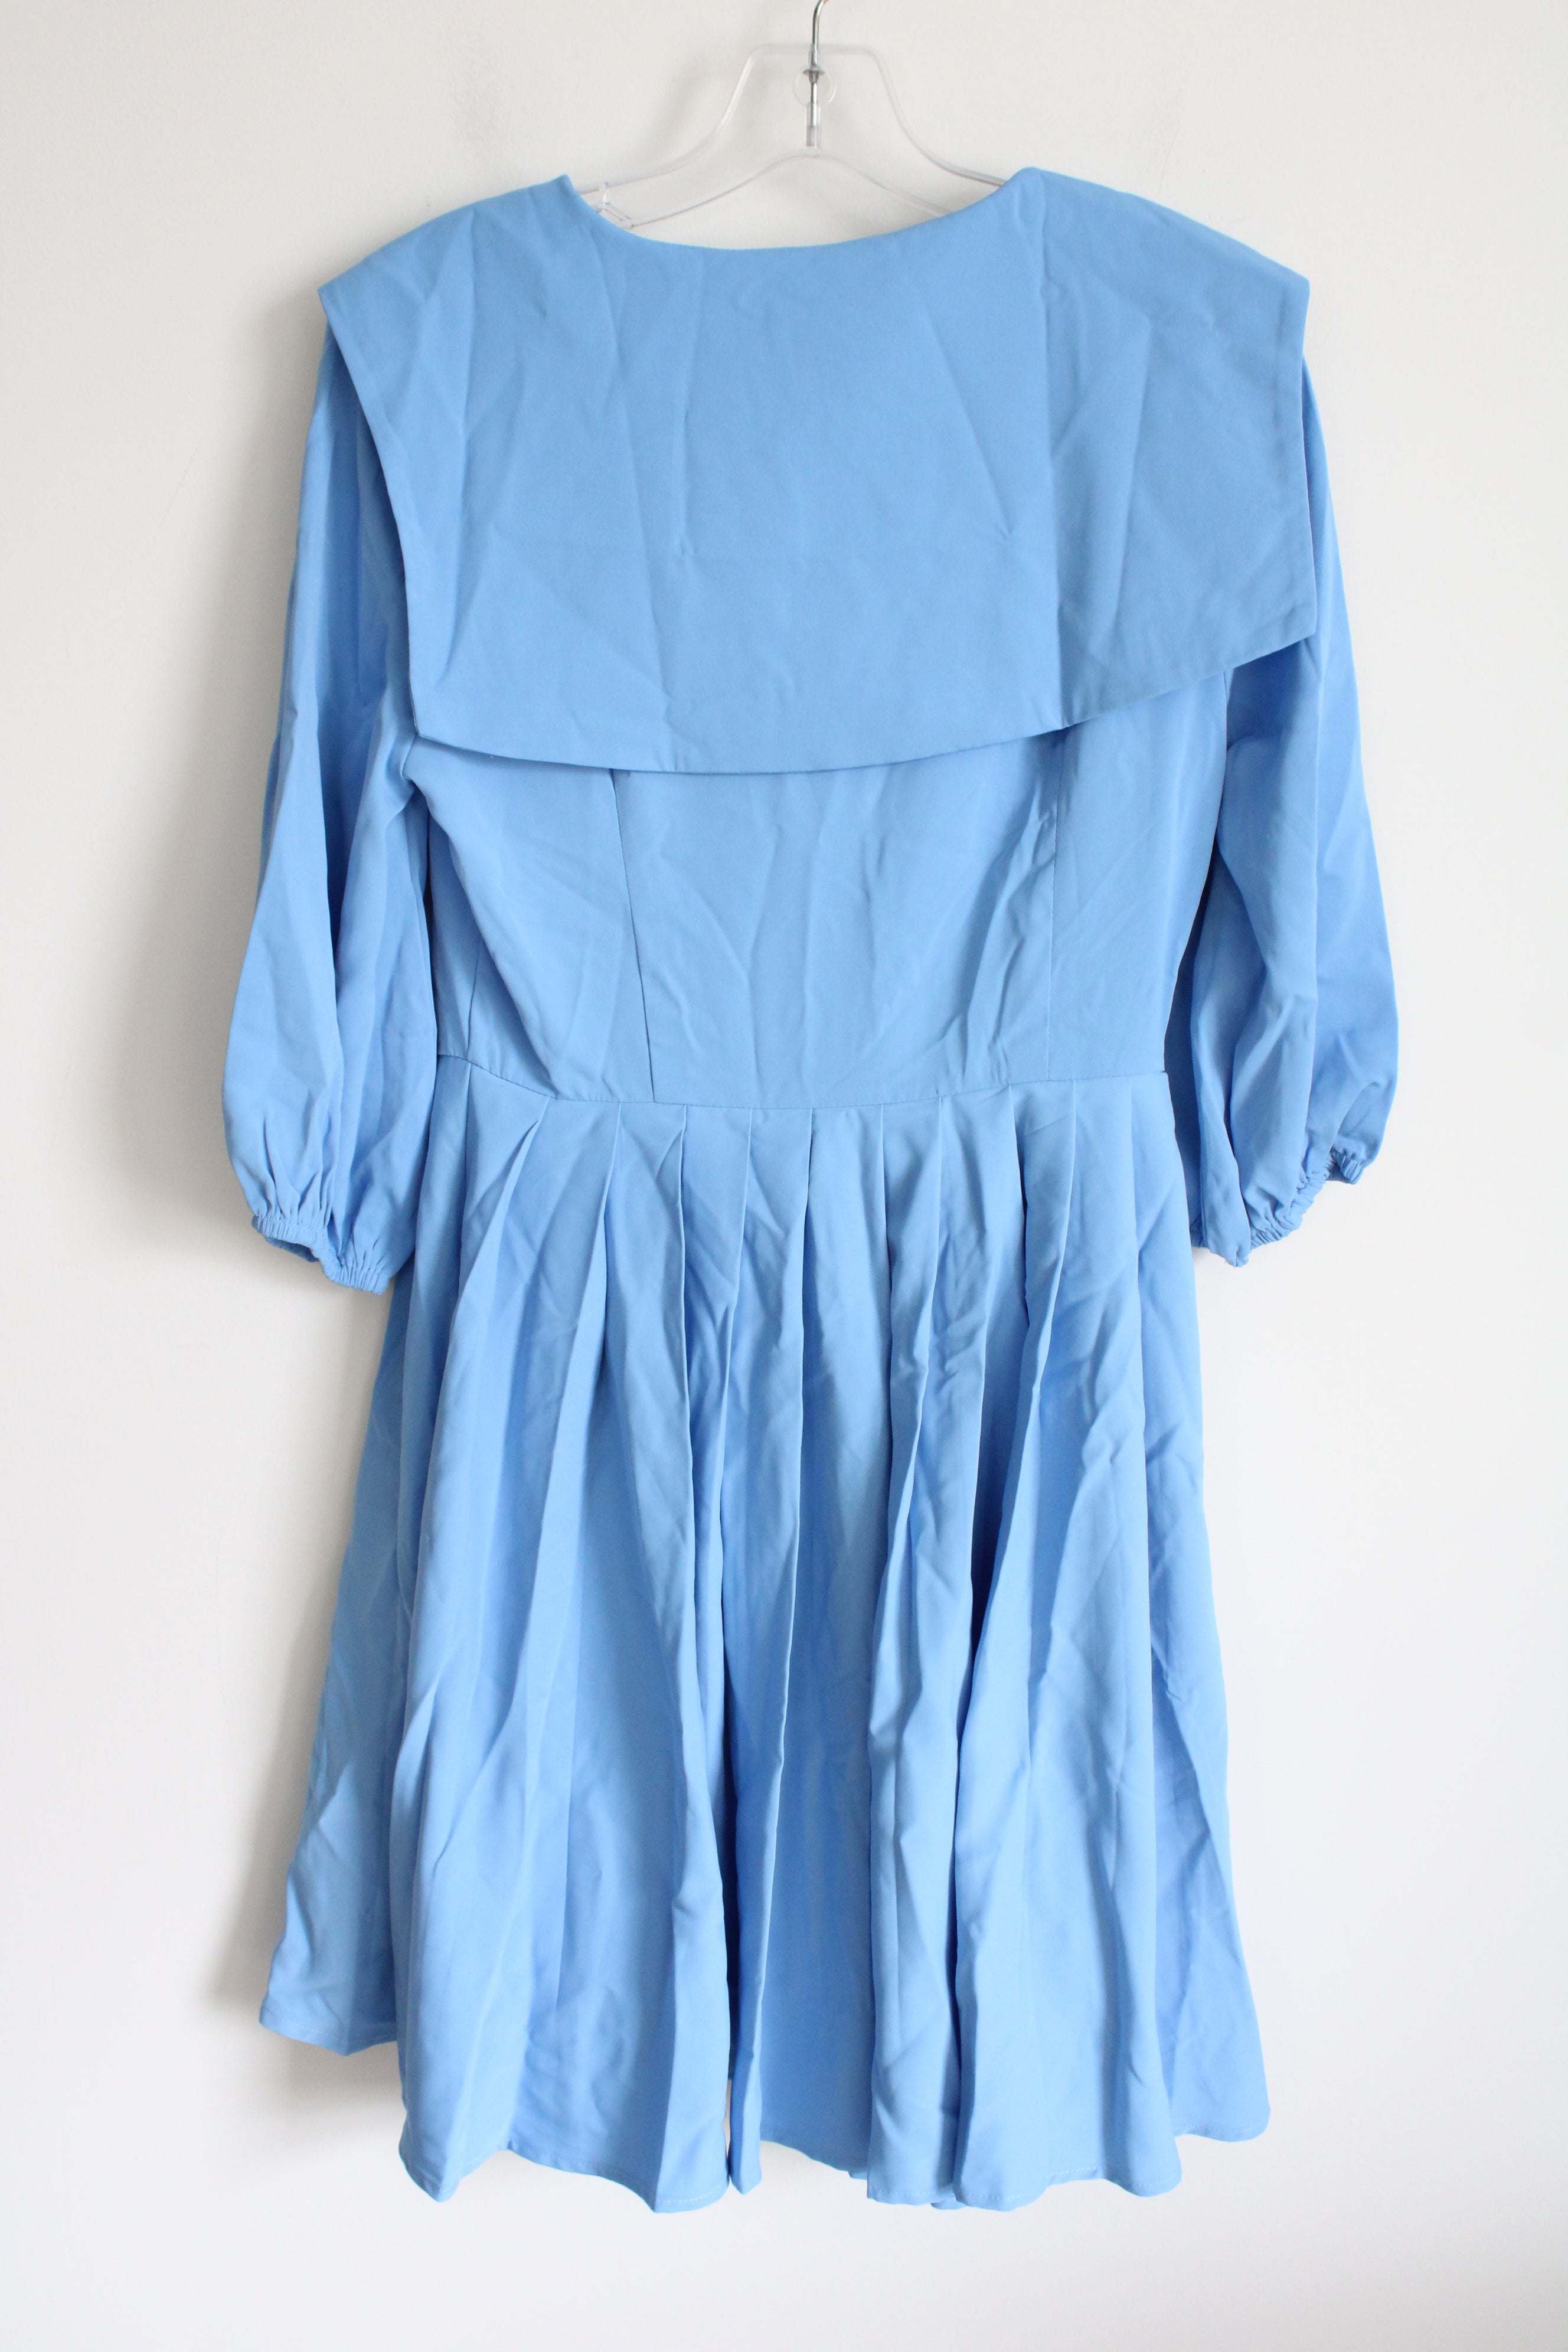 NEW Shein X Pugger Blue Dress | S